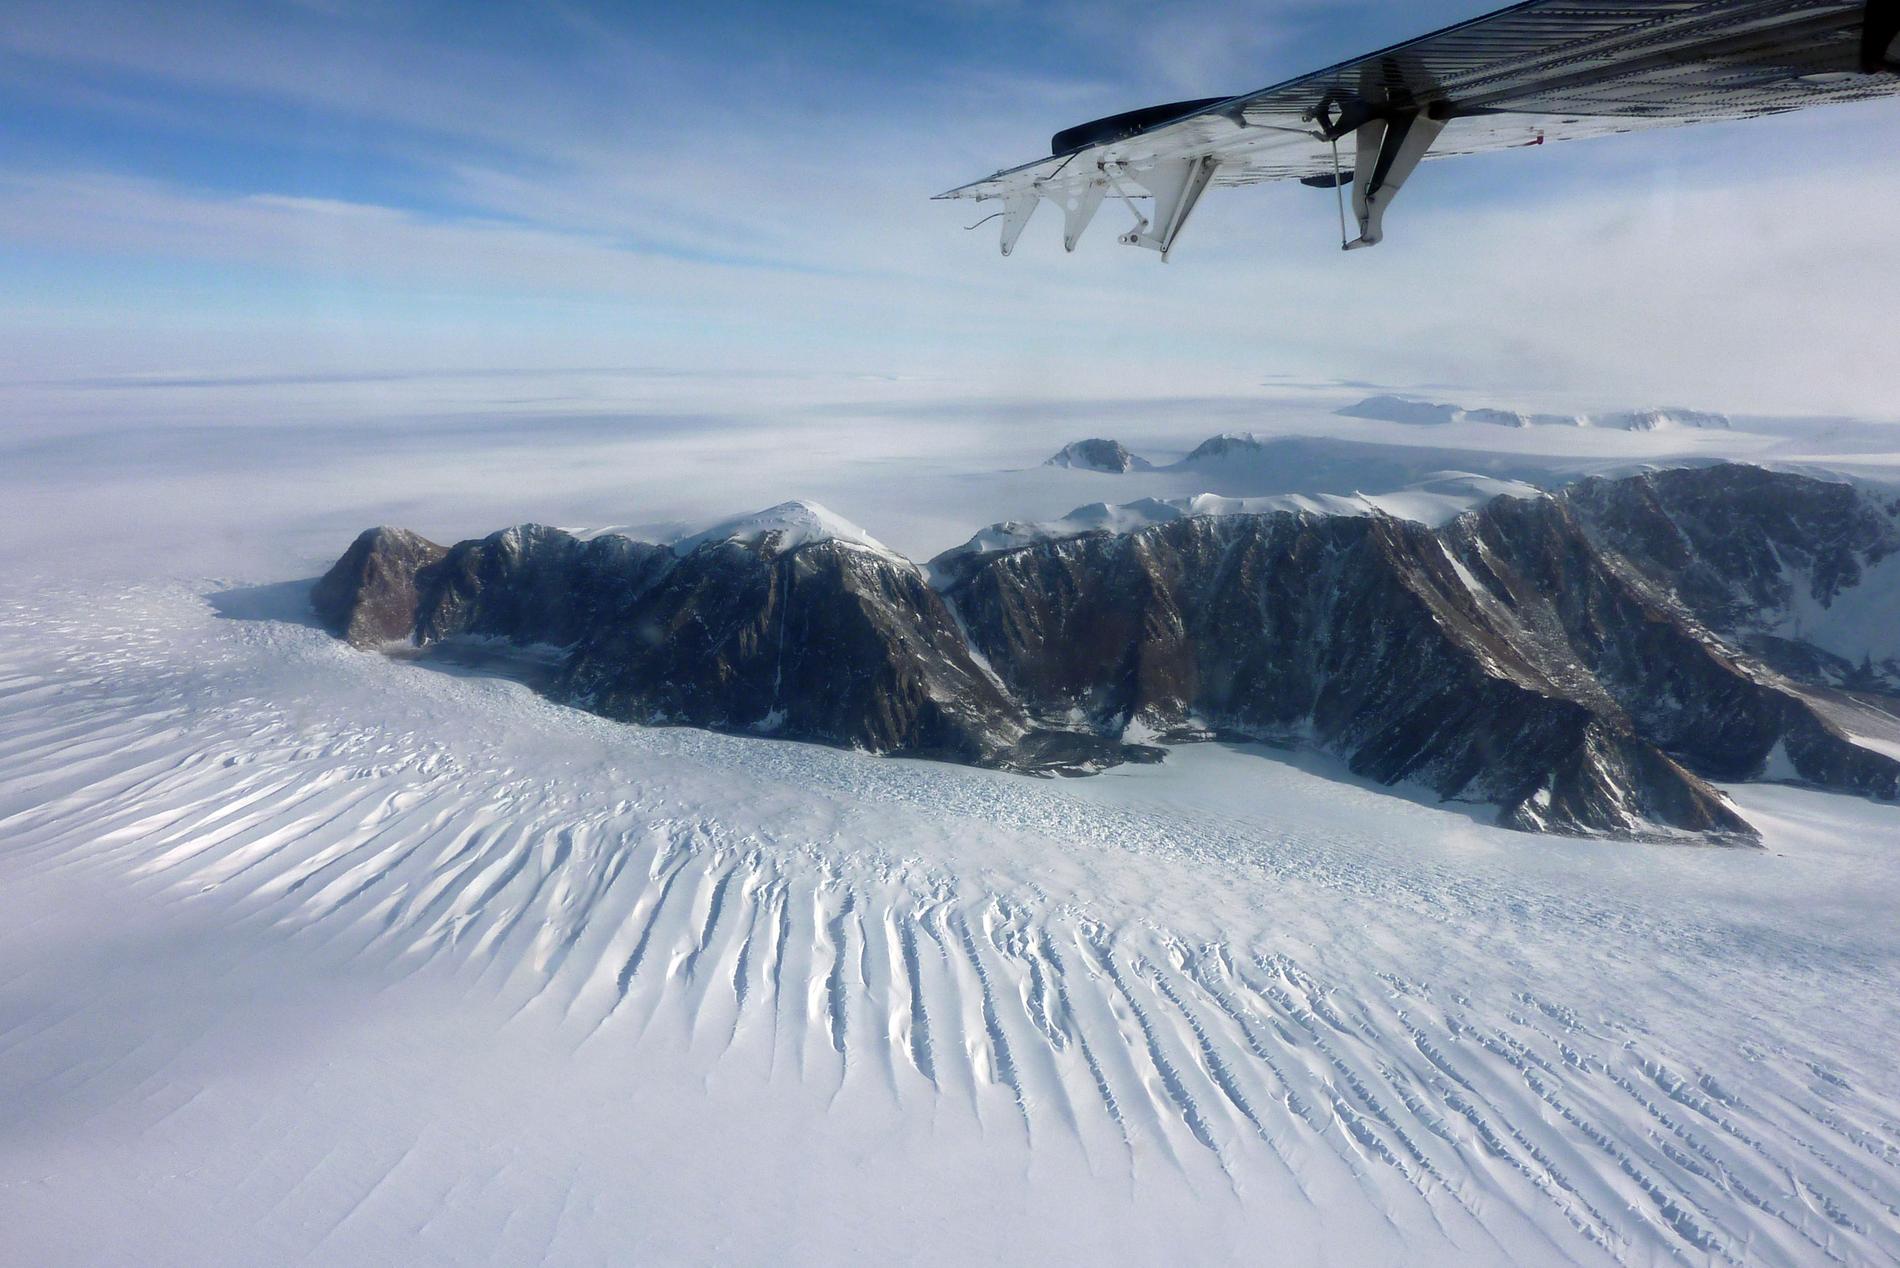 Världens djupaste ravin har upptäckts i Antarktis. Den banbrytande forskningsrapporten förutspås även kunna bidra till att öka förståelsen om hur glaciärer reagerar på klimatförändringar. Arkivbild.